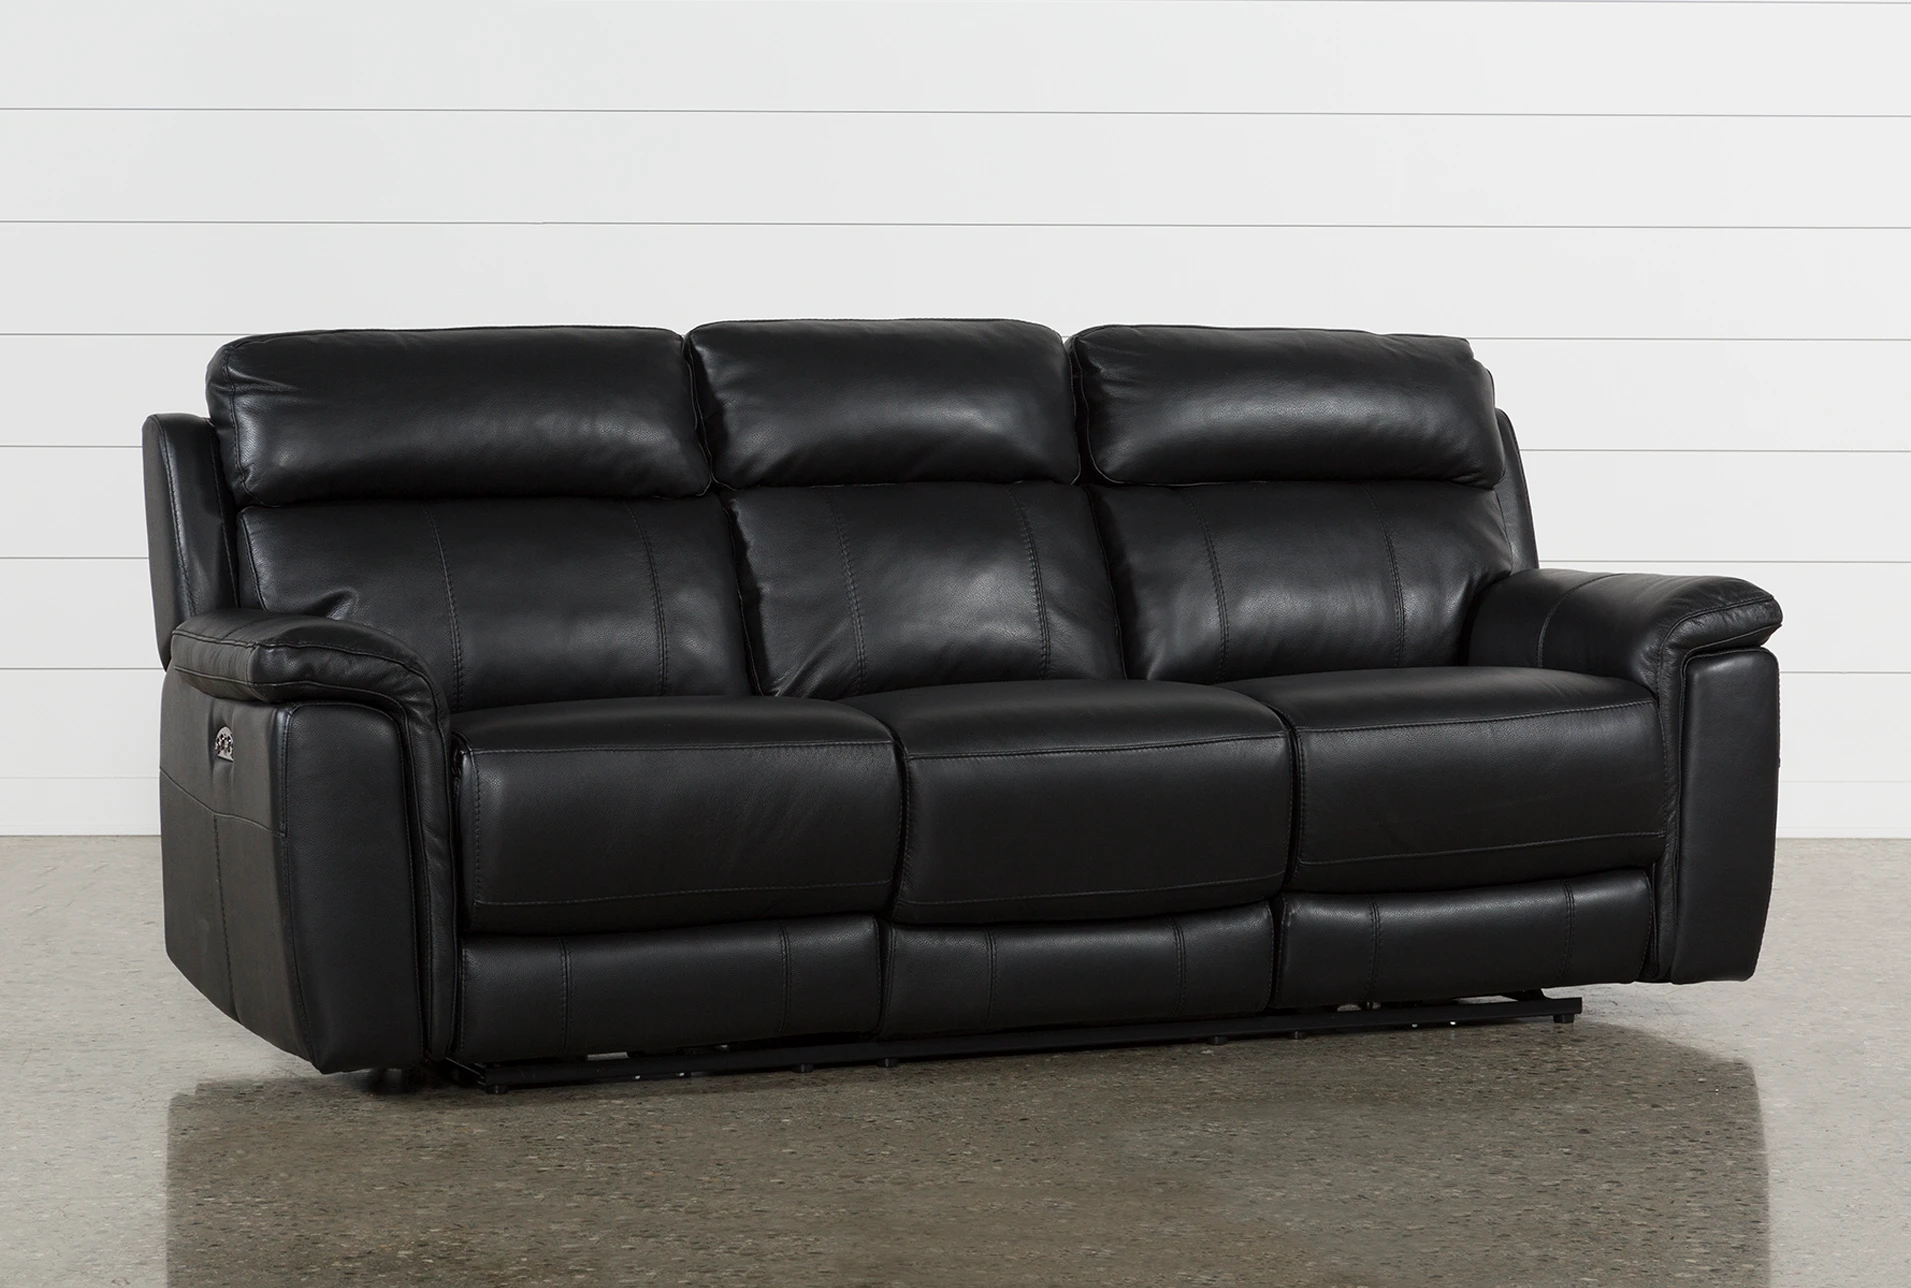 Dino Black Leather Power Reclining Sofa W Power Headrest Usb